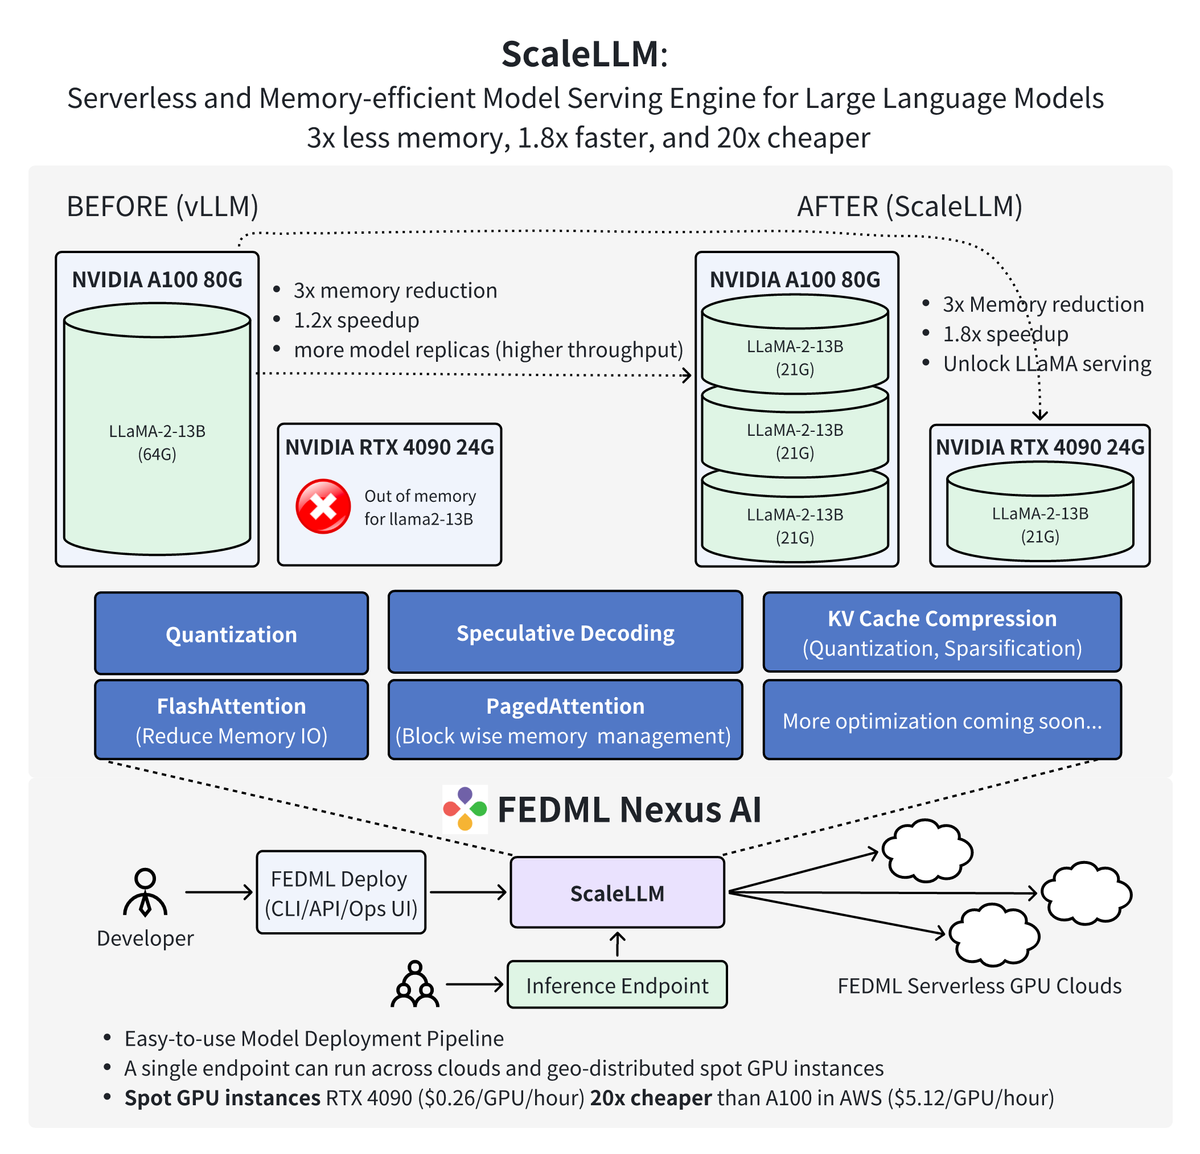 ScaleLLM: Unlocking Llama2-13B LLM Inference on Consumer GPU RTX 4090, powered by FEDML Nexus AI